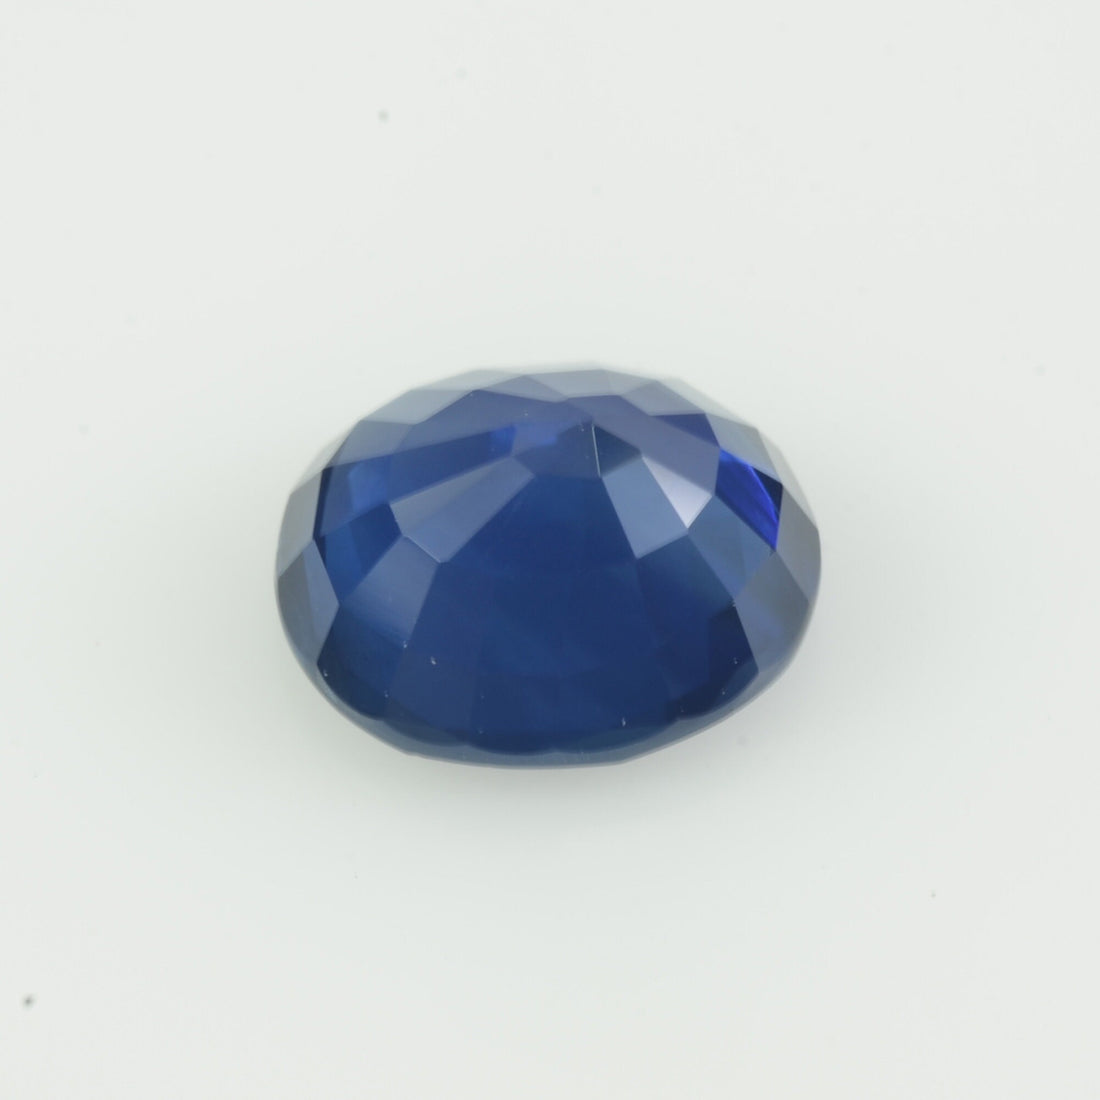 2.22 cts Natural Blue Sapphire Loose Gemstone Cushion Cut